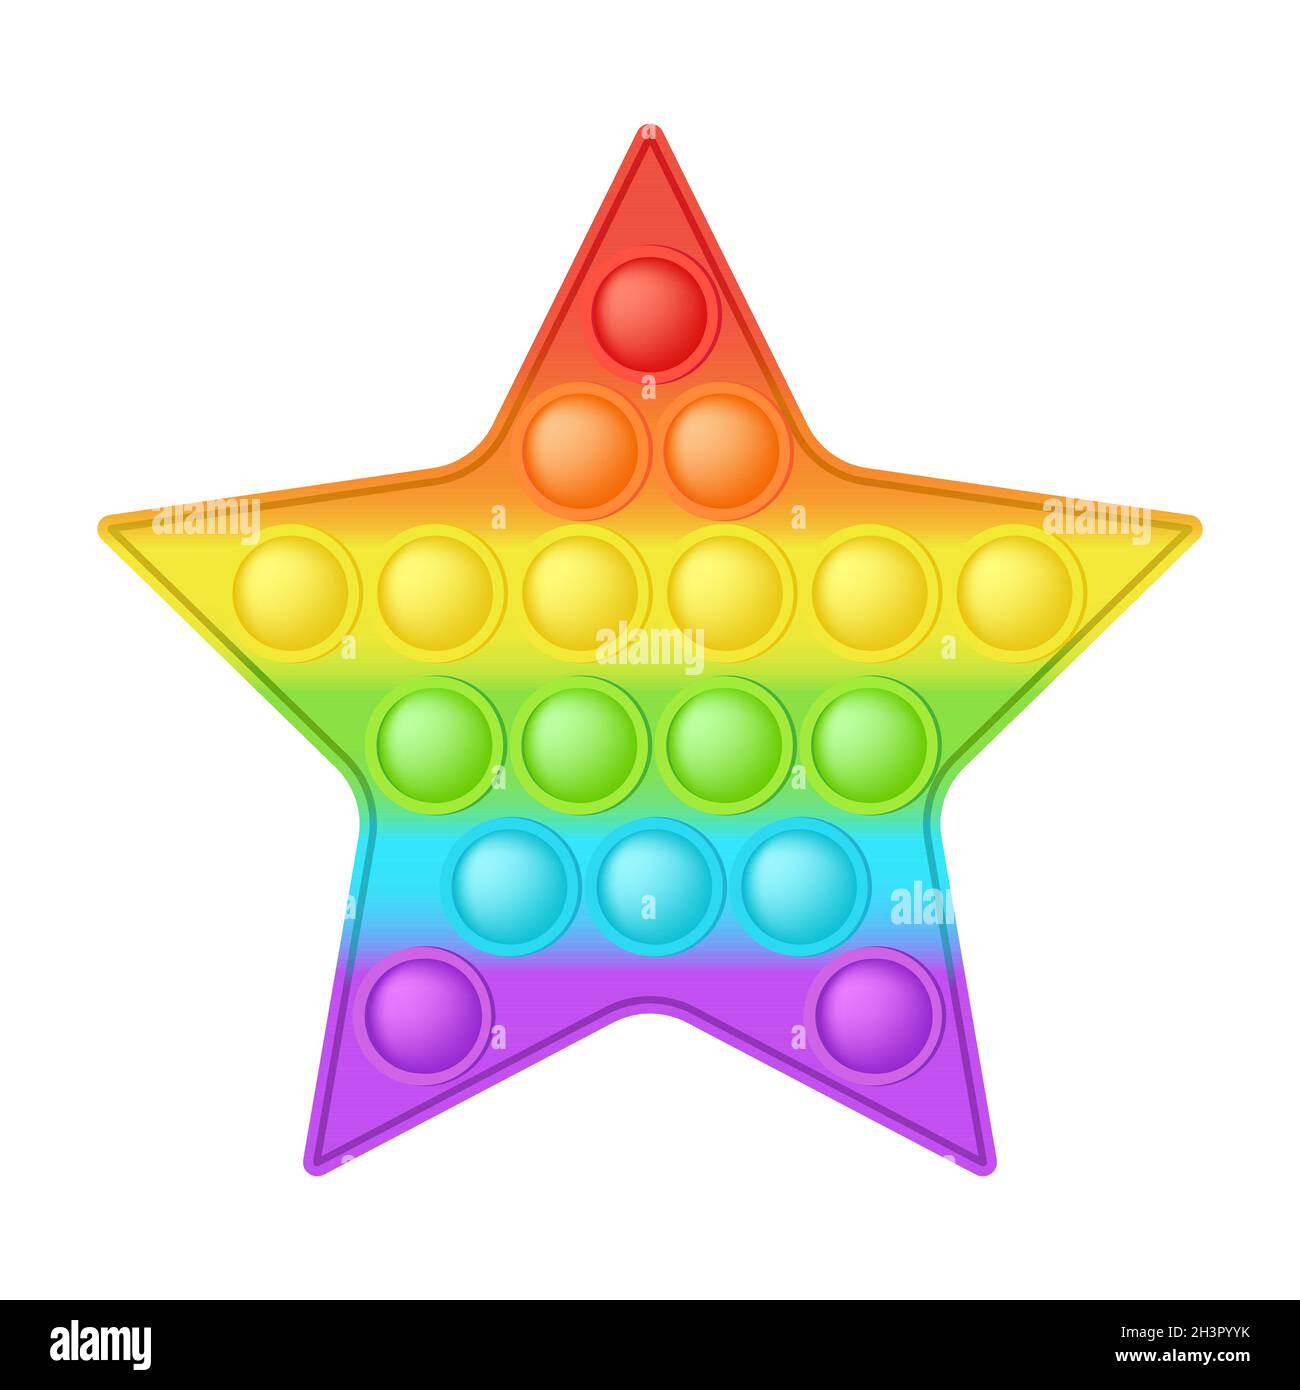 POPIT Figur Stern als modisches Silikon-Spielzeug für Fidgets. Süchtig  machendes Anti-Stress-Spielzeug in hellen Regenbogenfarben. Blasenangst  Entwicklung Pop it Spielzeug Stock-Vektorgrafik - Alamy